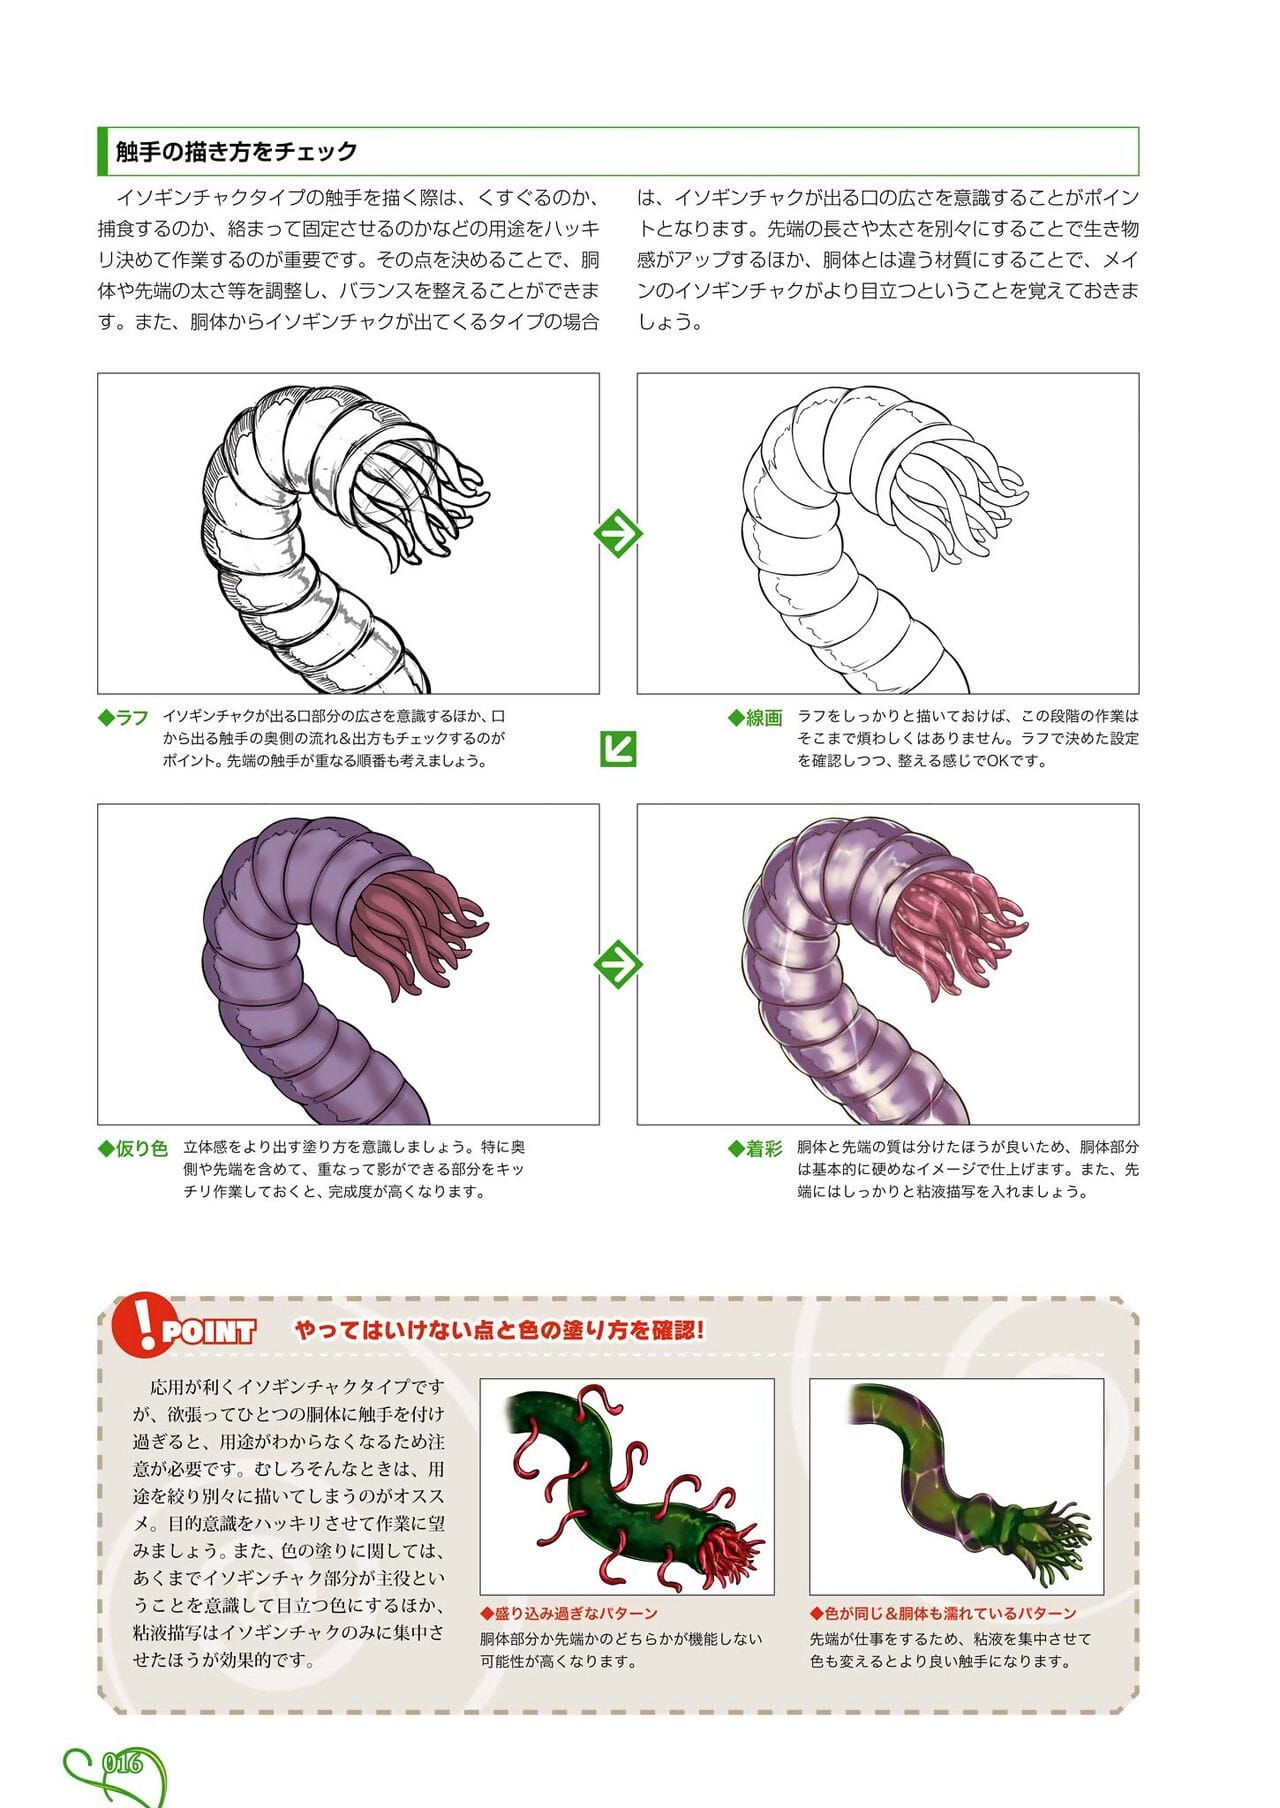 comment pour tirage tentacules page 1